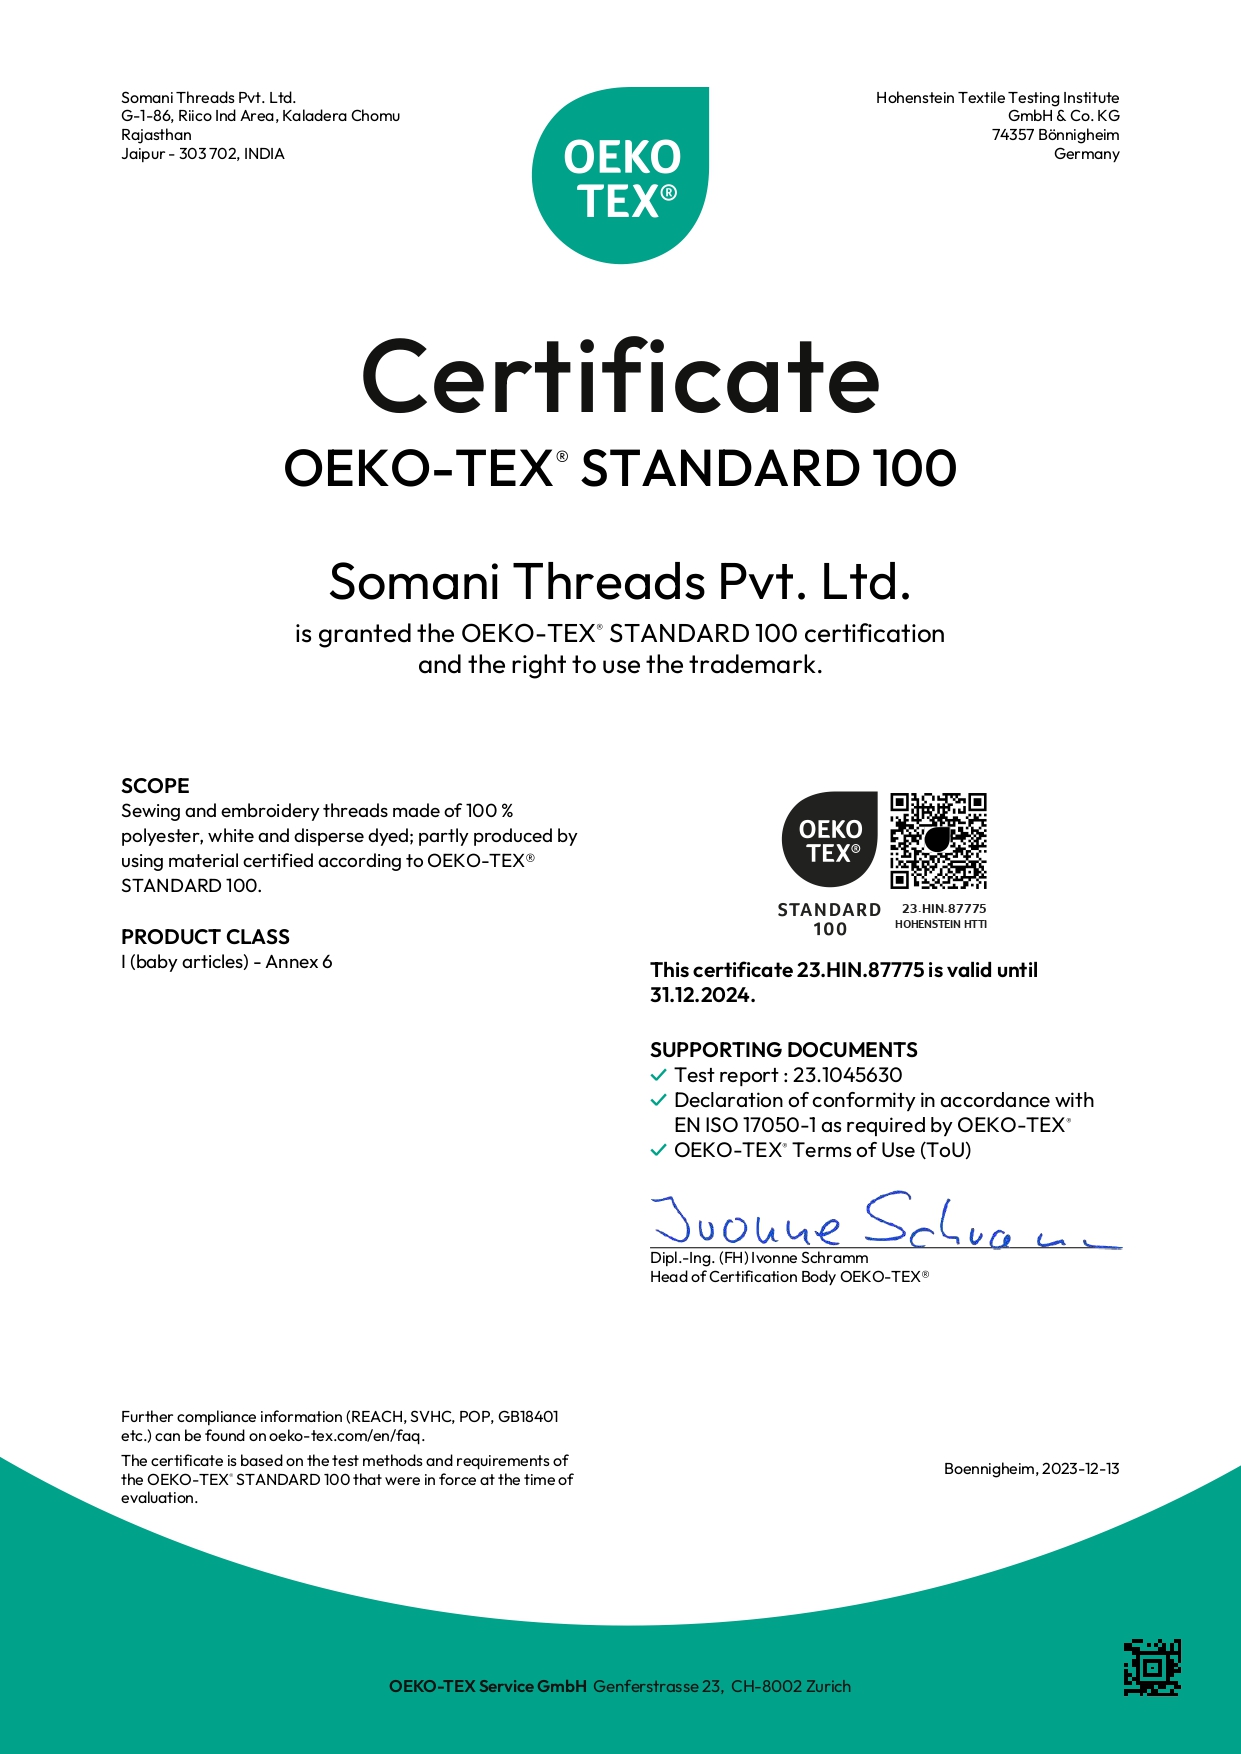 oeko-certificates